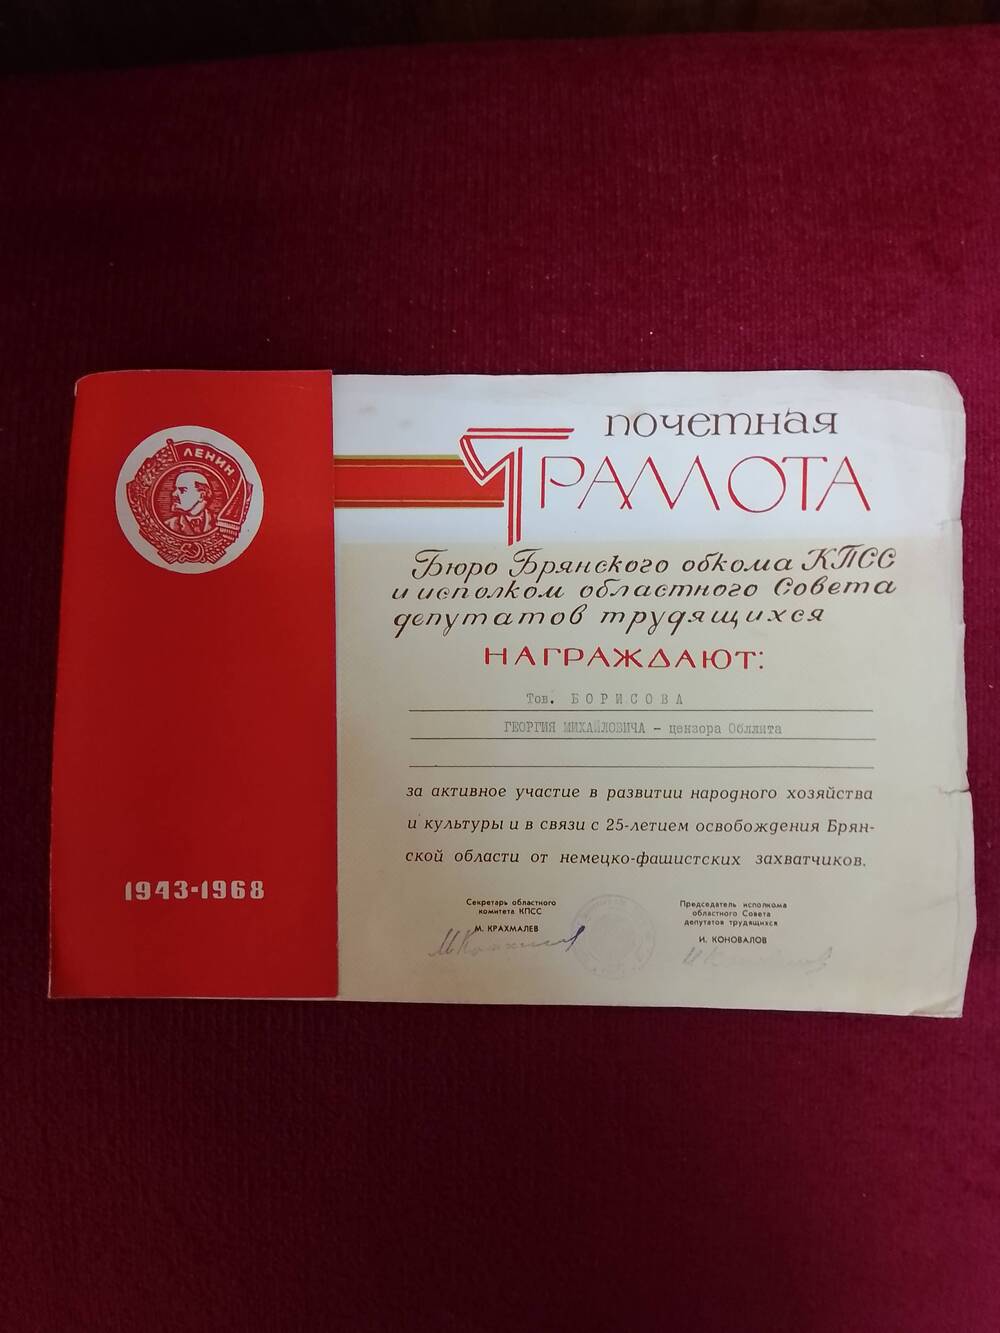 Почетная грамота на имя Борисова Георгия Михайловича.